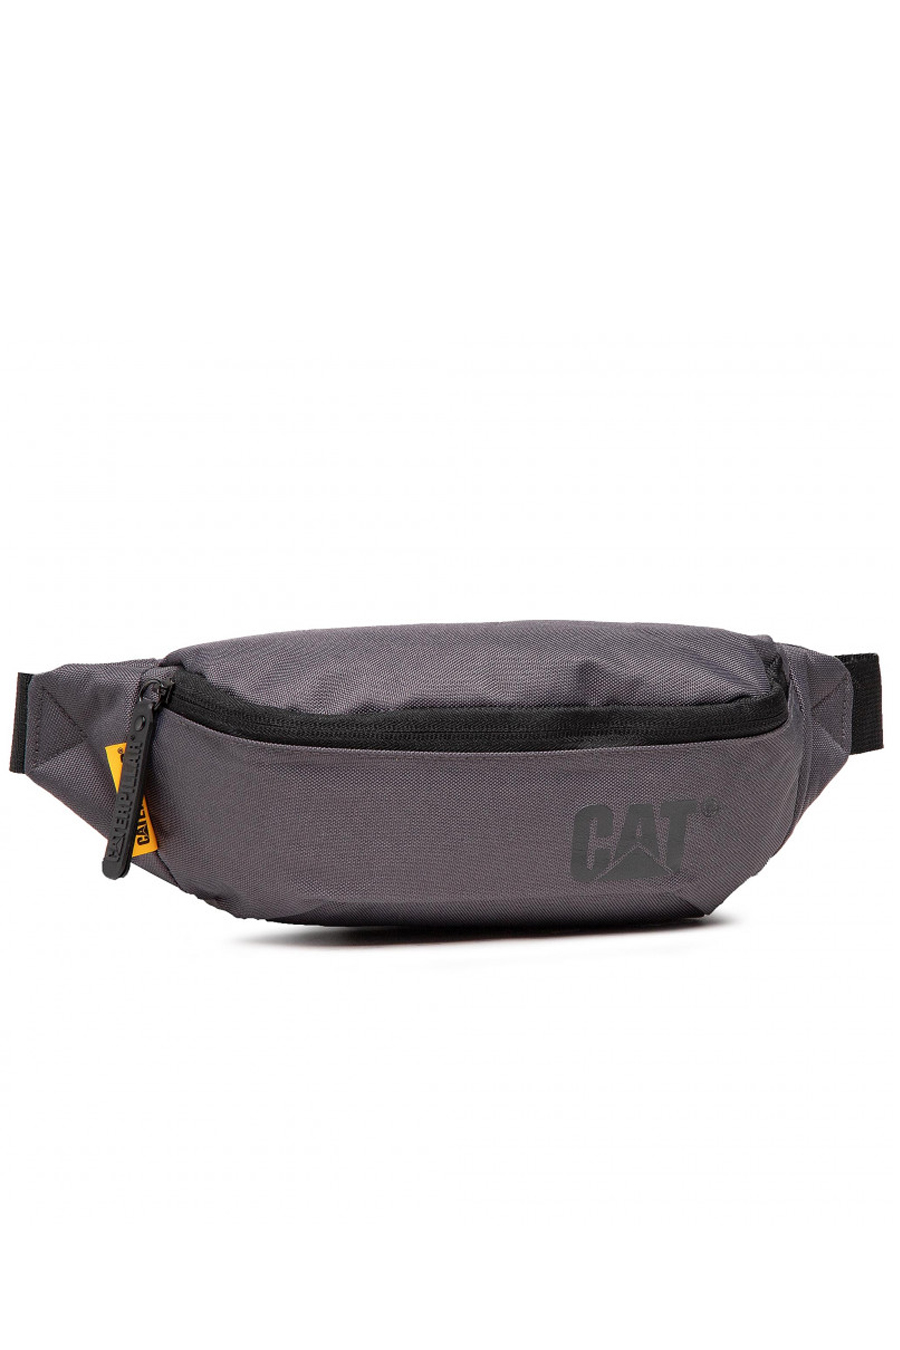 Belt Bag CAT 83615-483